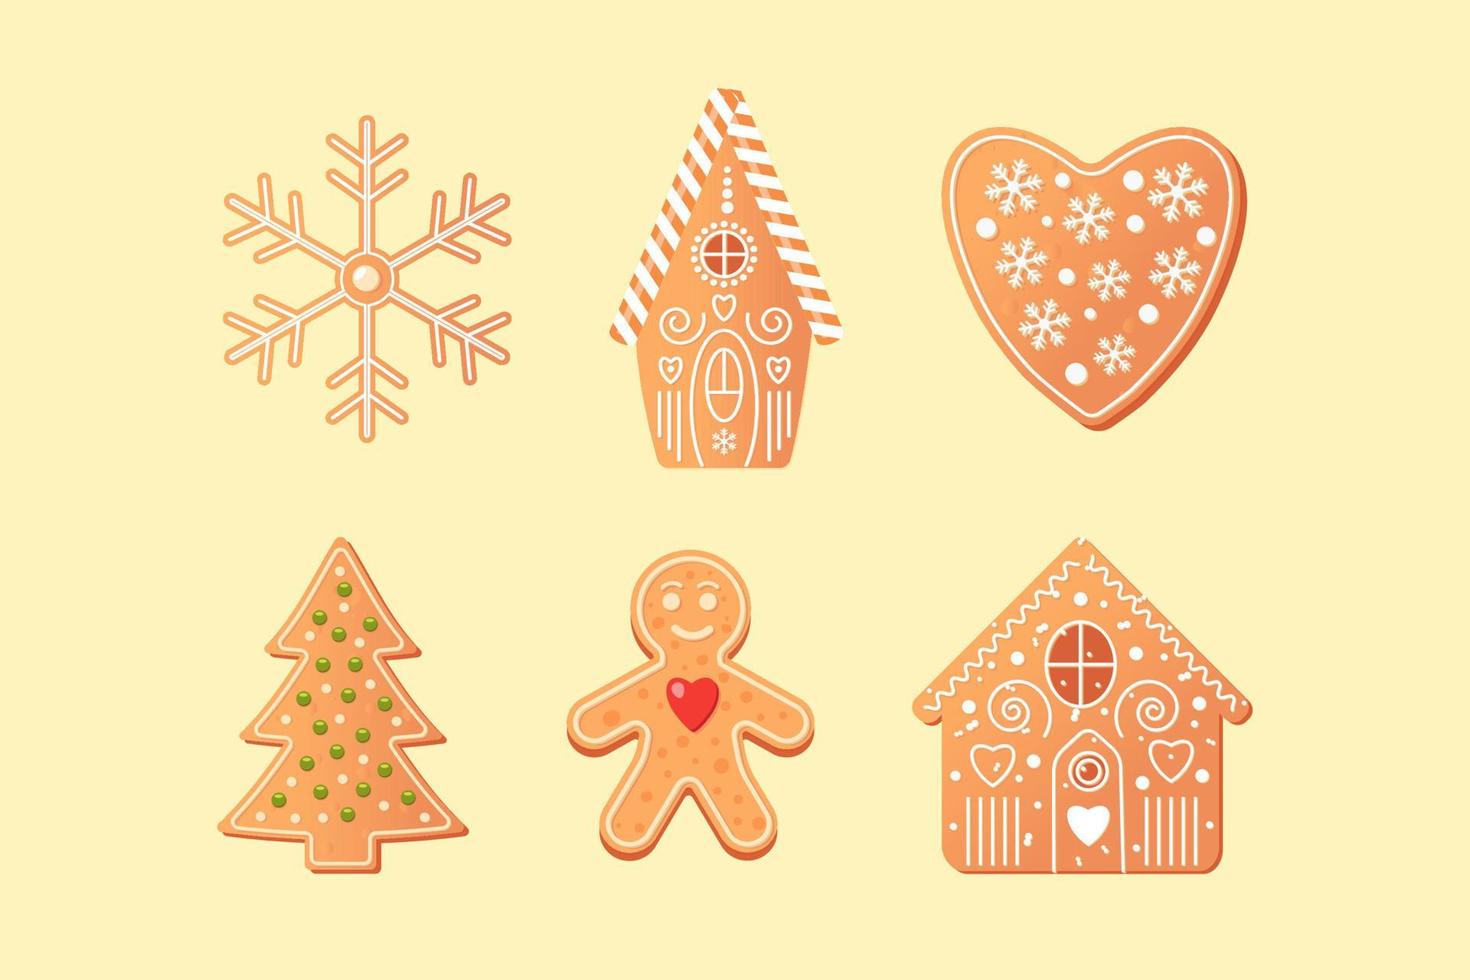 reeks van coockies met Kerstmis boom, huis, hart, ster en peperkoek Mens. vector